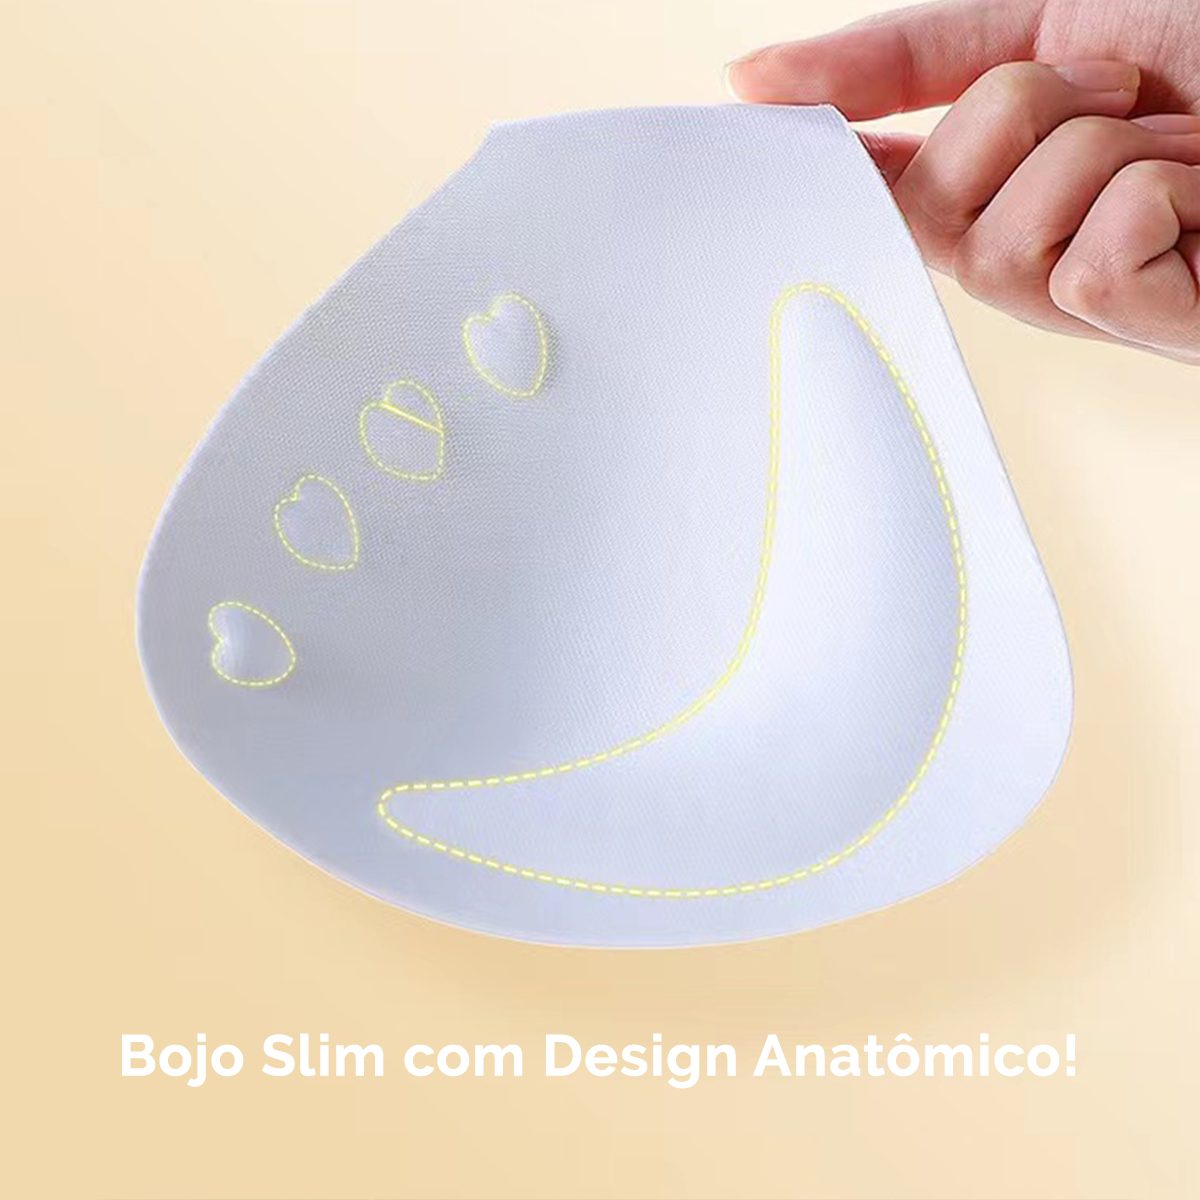 Bojo Slim com Design Anatômico, Adaptação Perfeita em Qualquer Tamanho de Seio